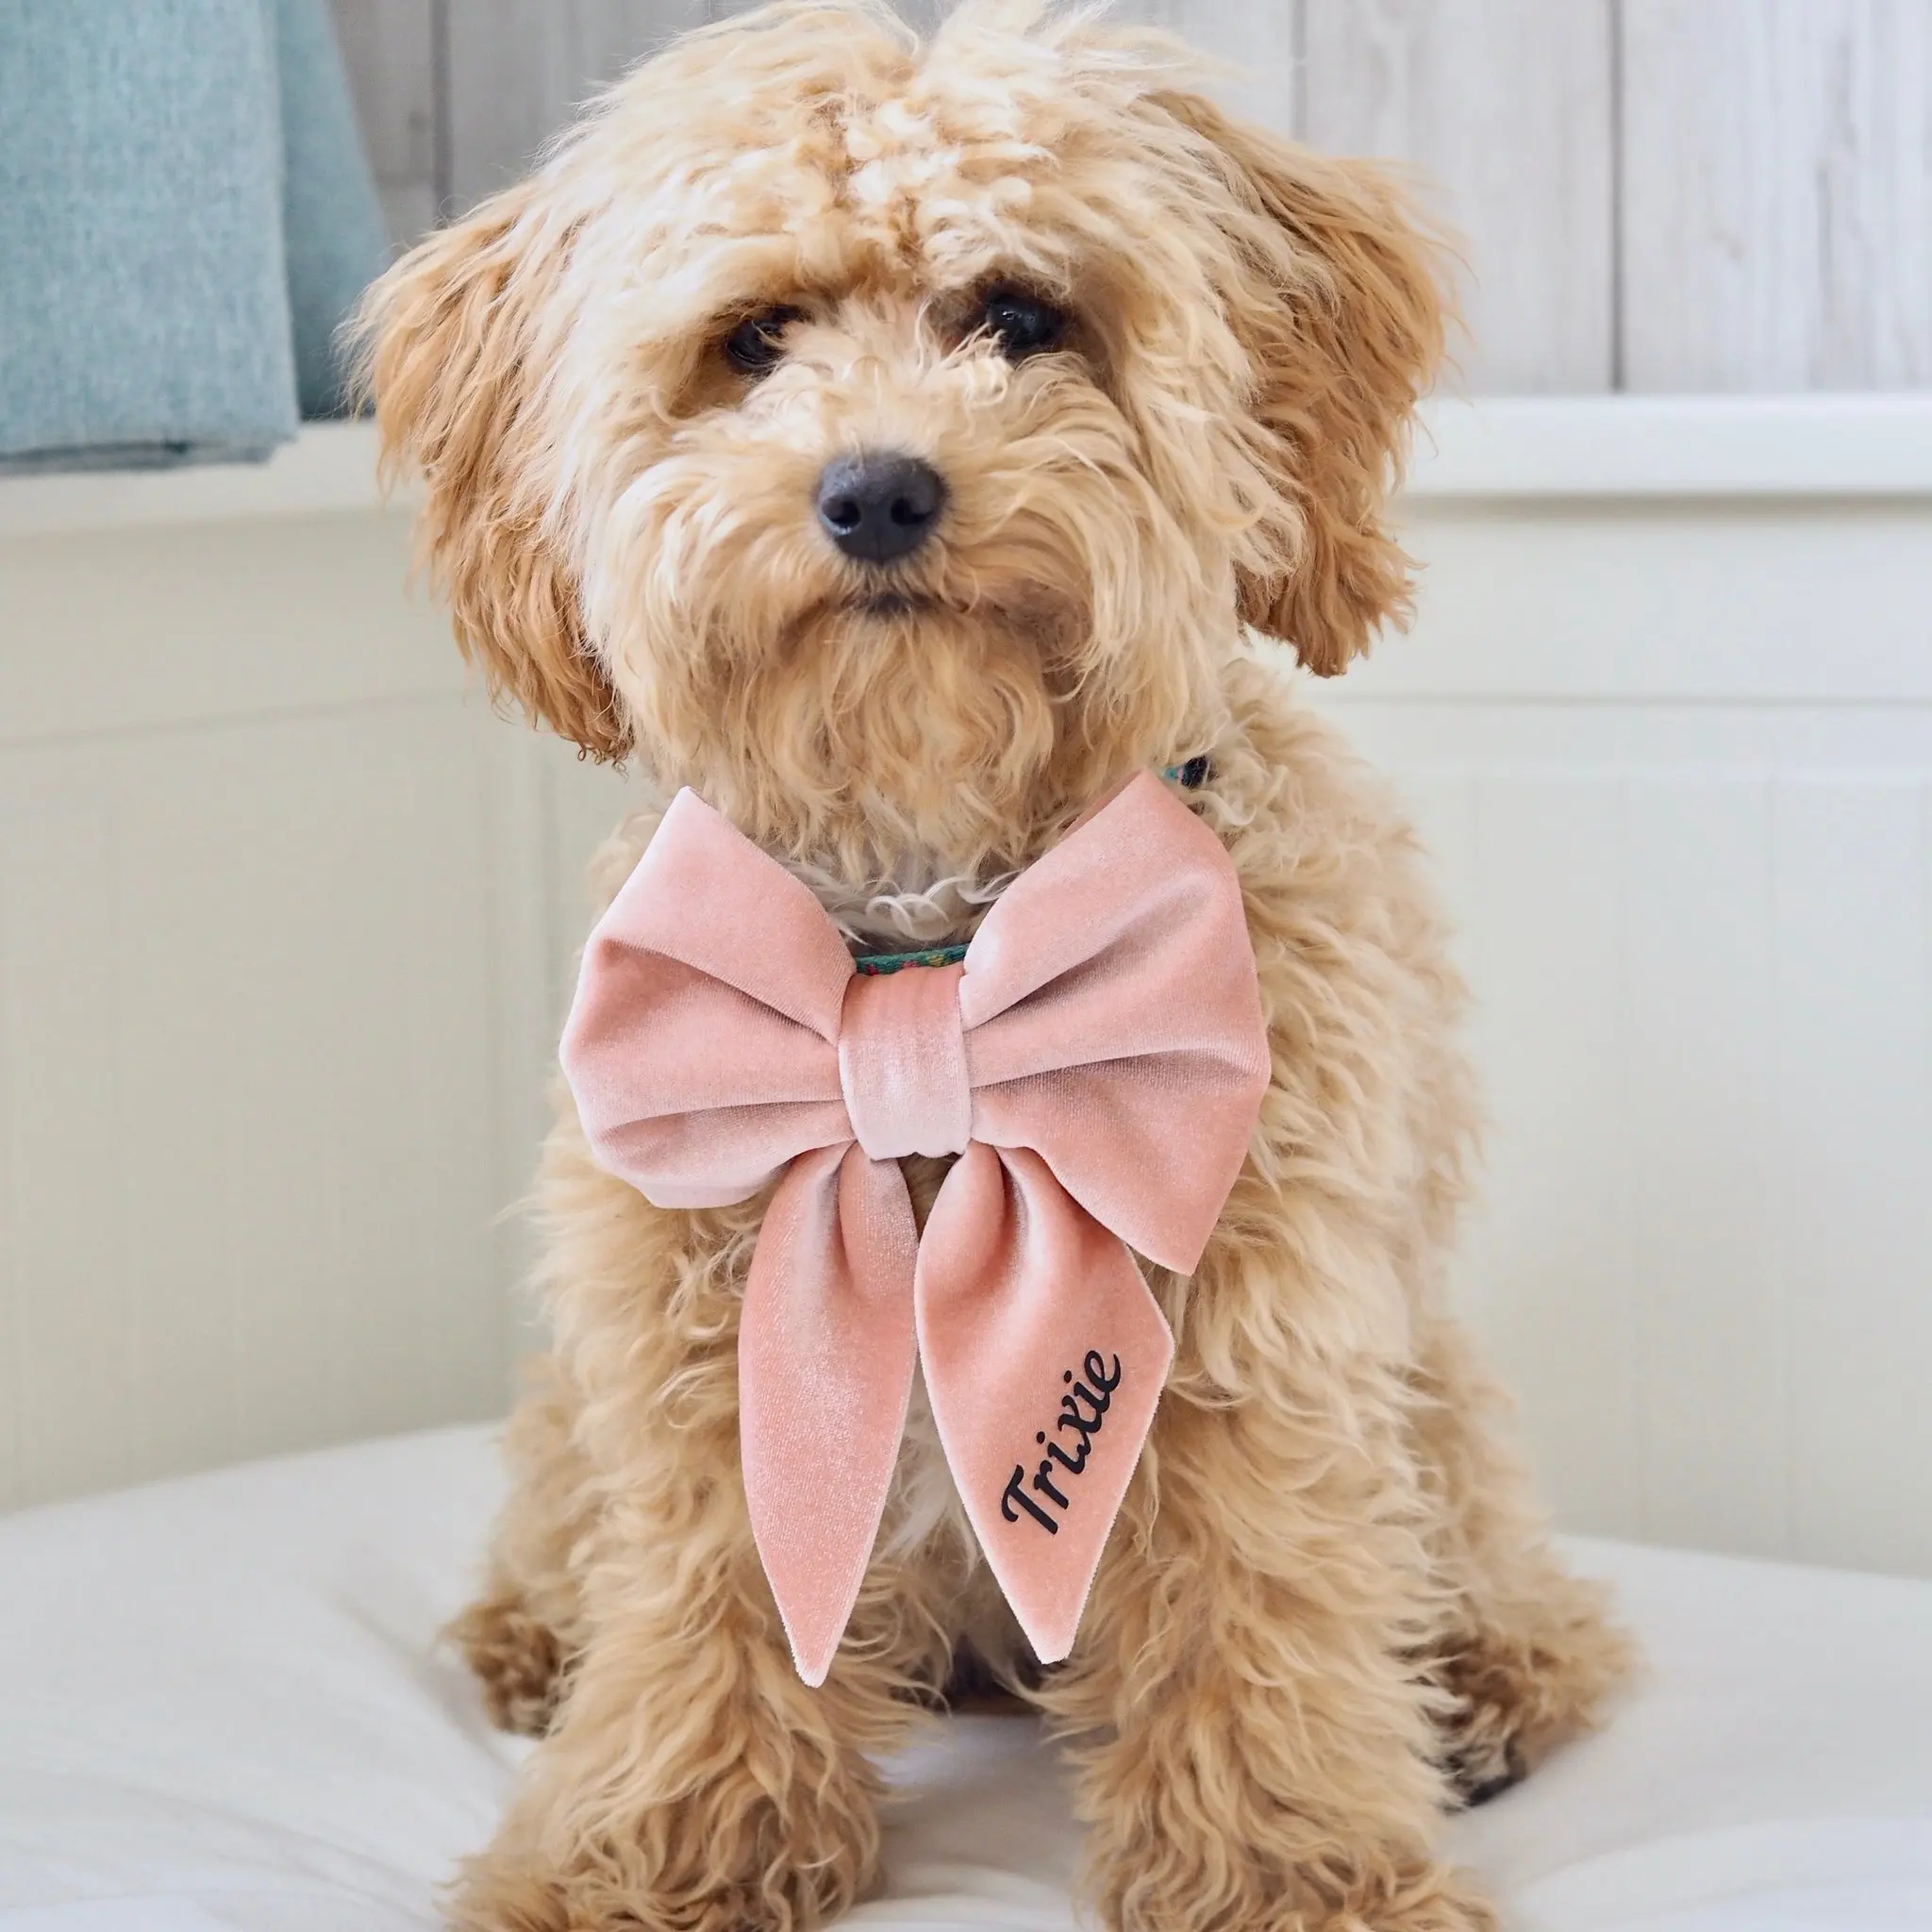 Bandana triangular de algodón personalizada, Collar de perro con lazo, conjunto de pecho y espalda, conjunto de chaleco con tirantes para mascotas